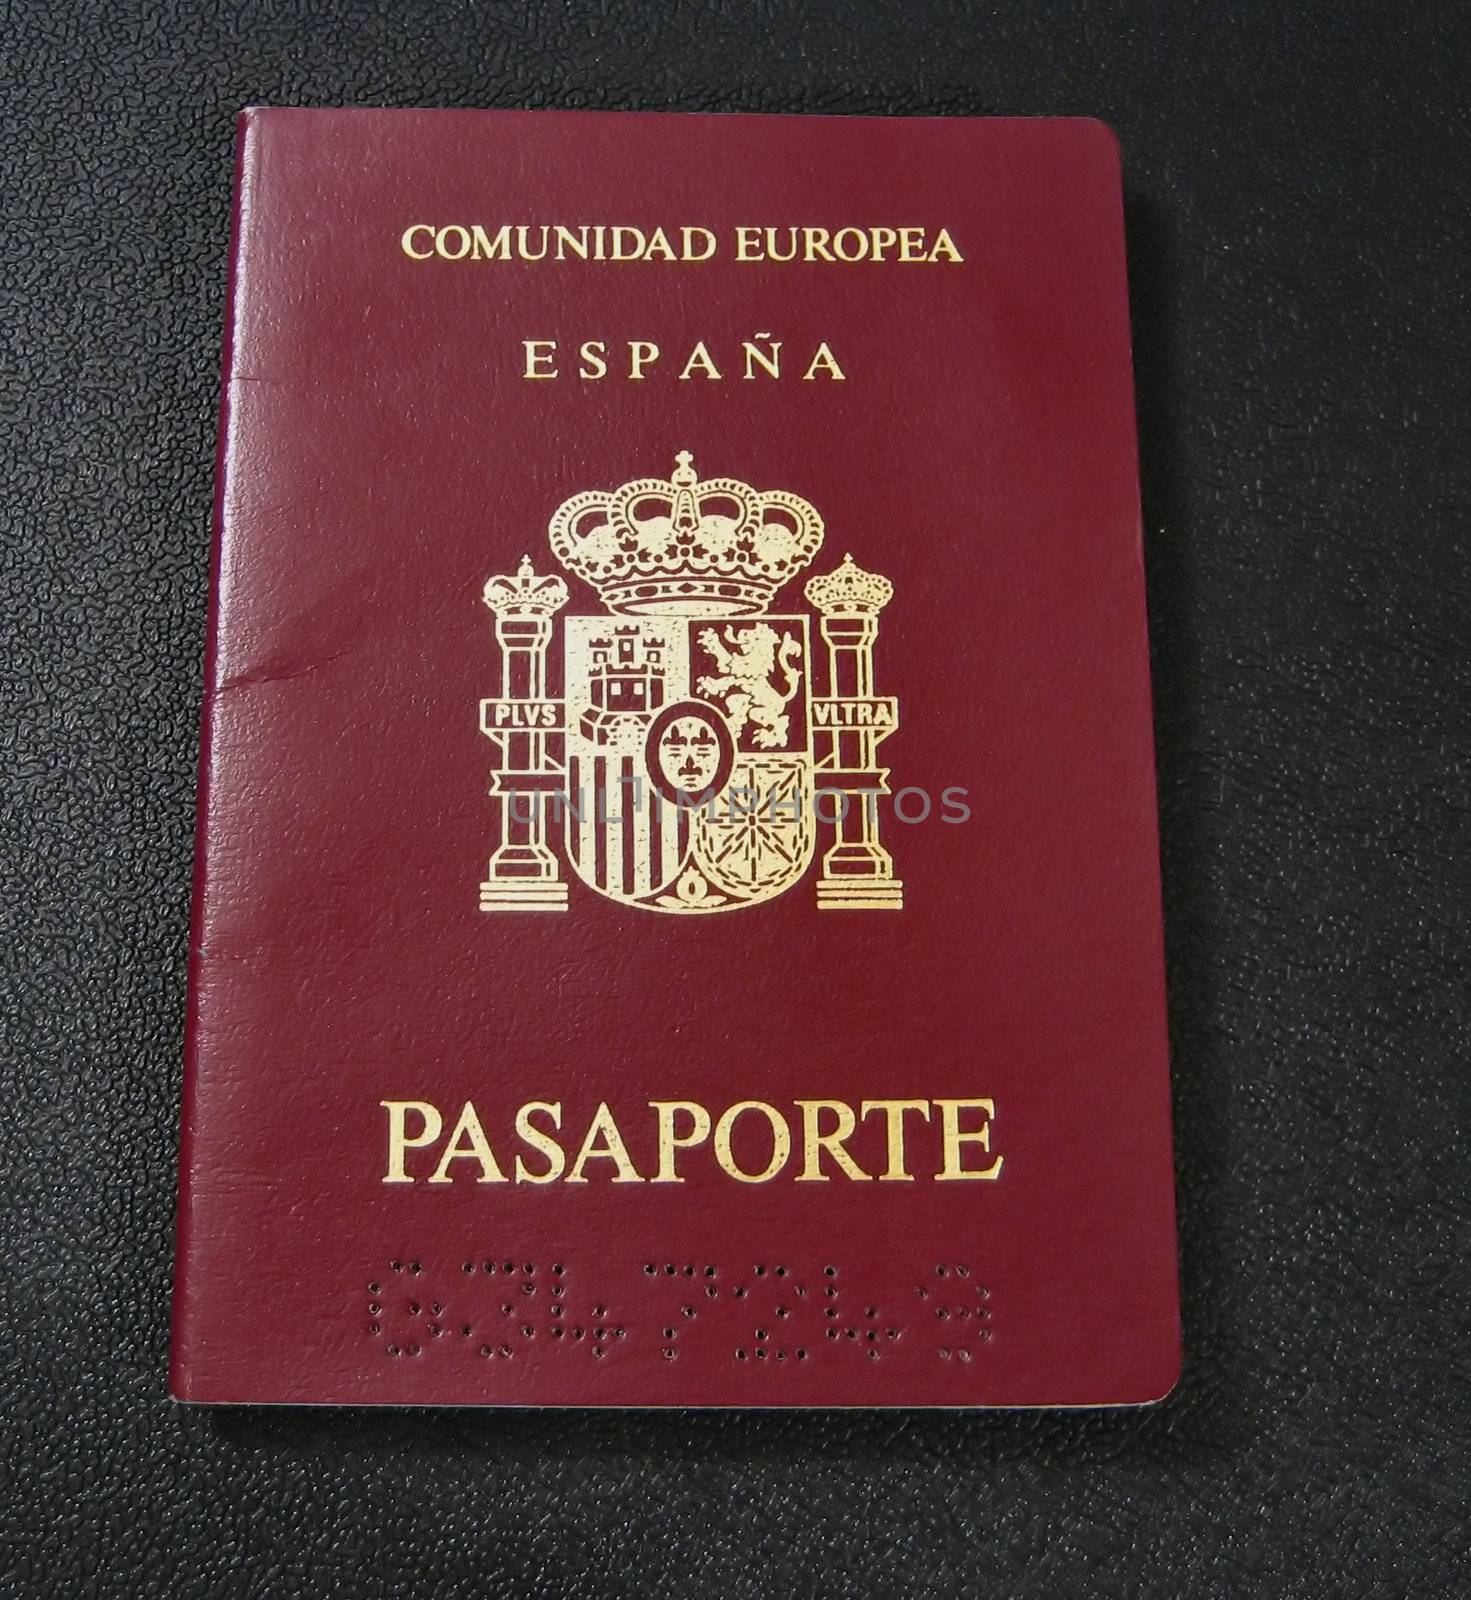 Passport by albln